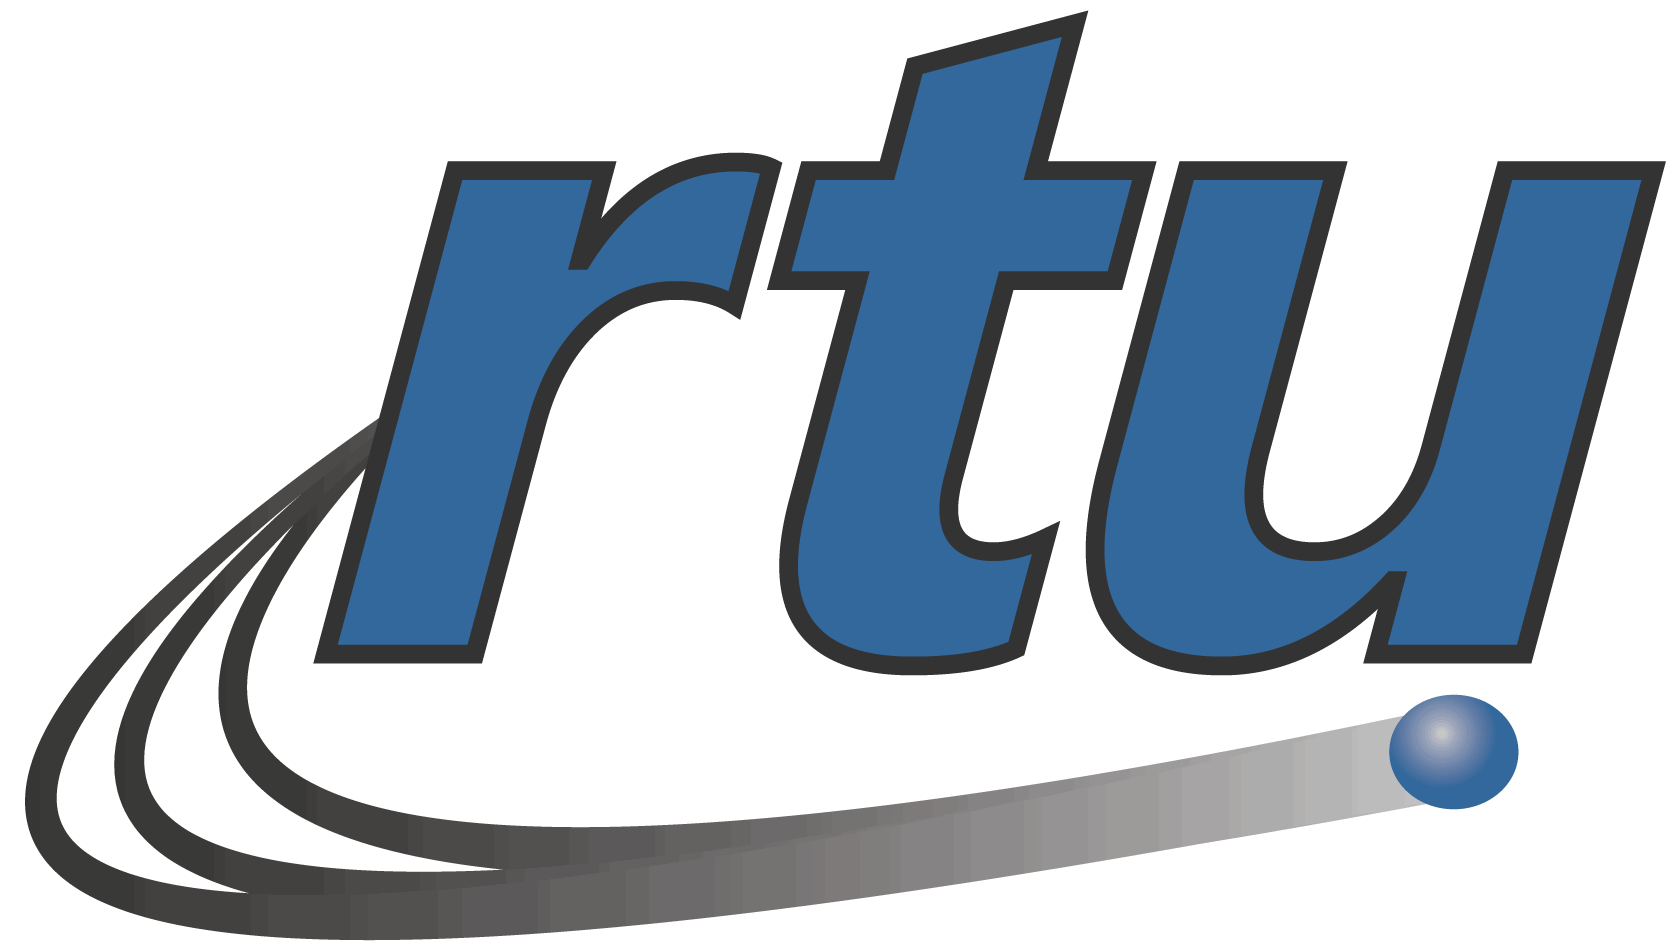 RTU